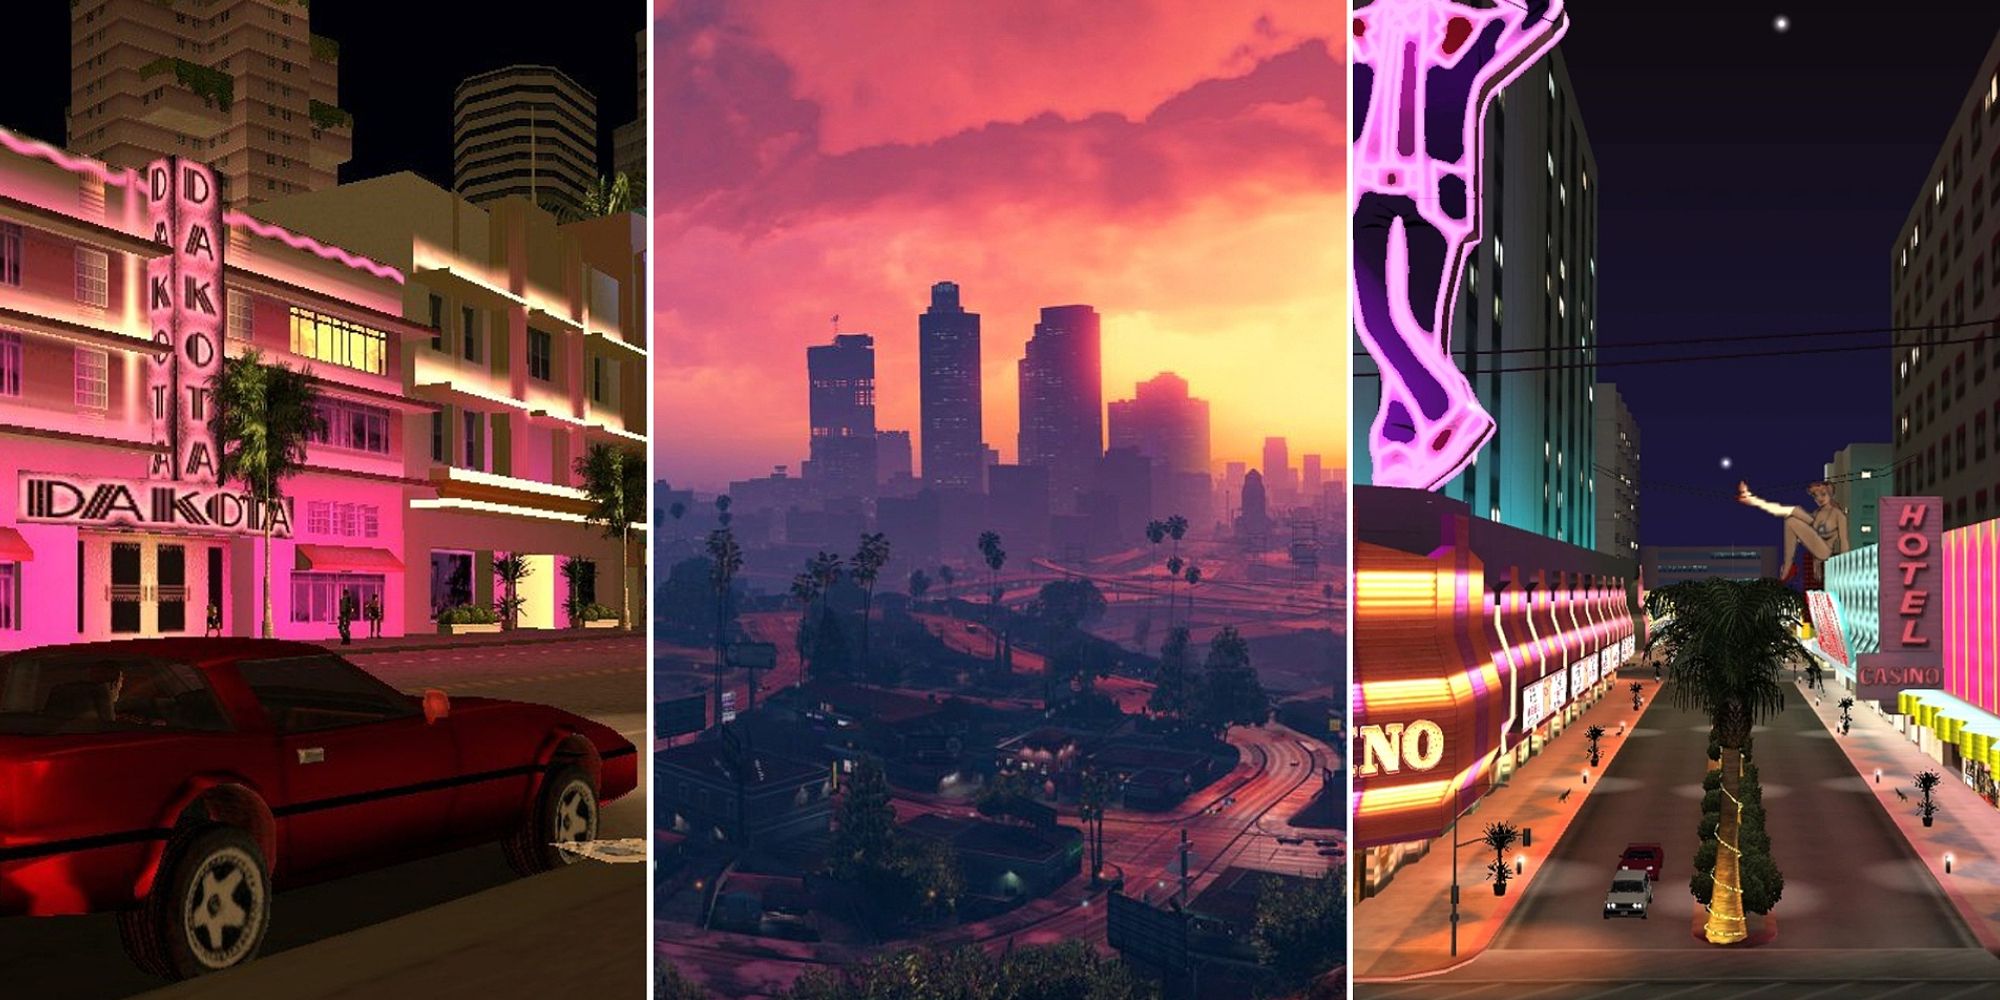 Eine Collage aus farbenfrohen Bildern mit einer neonbeleuchteten Straße, einer Skyline bei Sonnenuntergang und einer weiteren Neonstraße